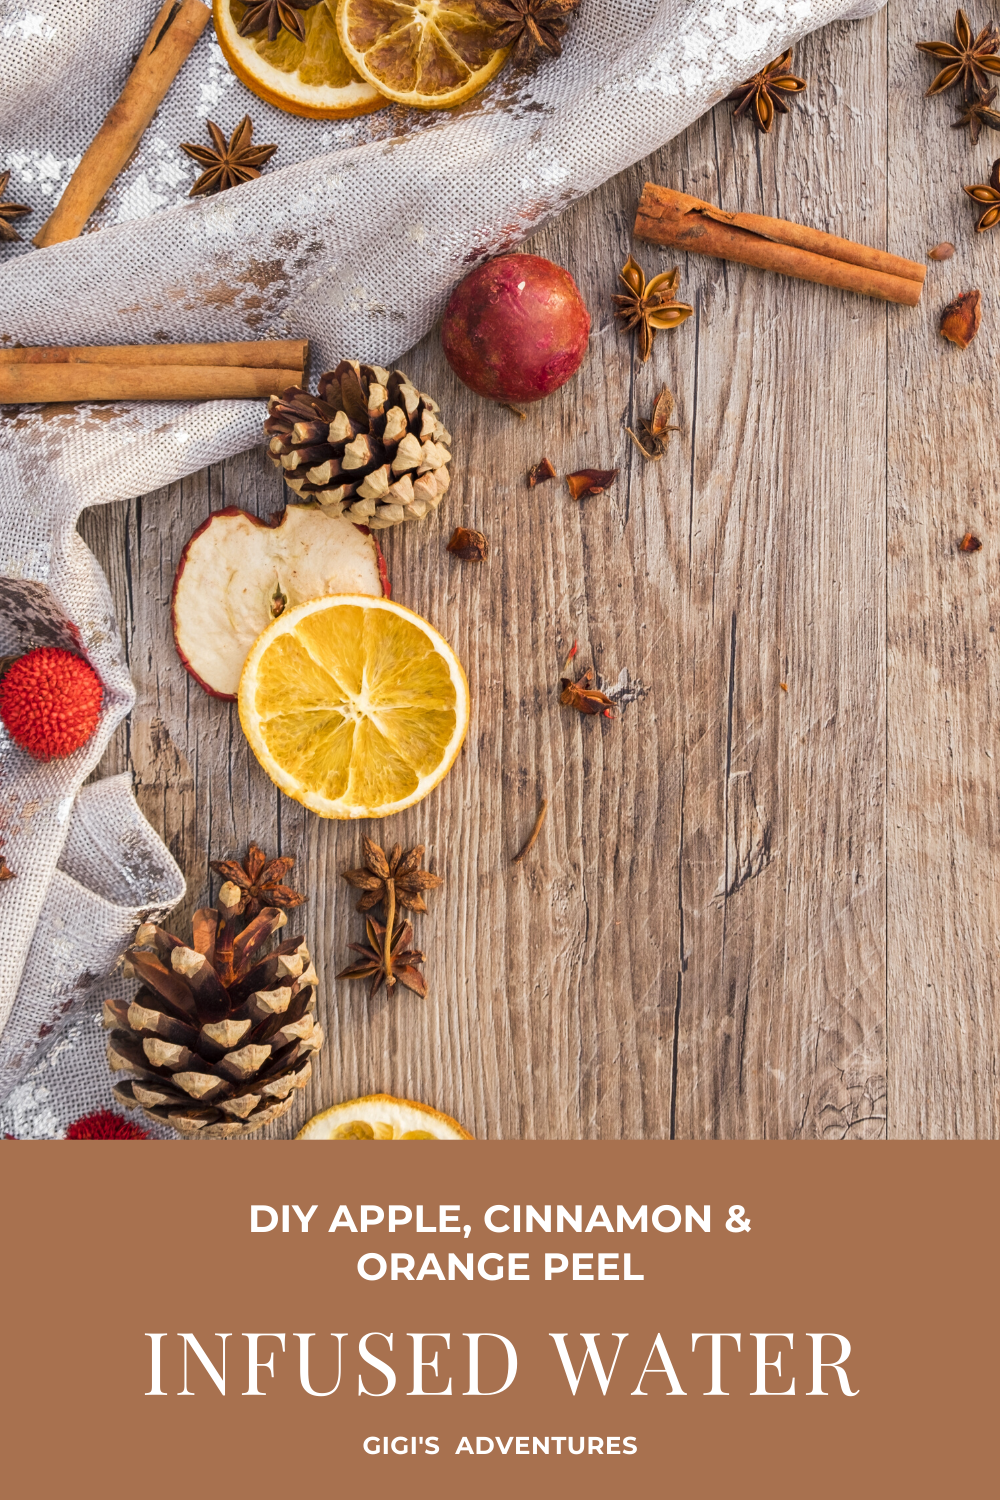 DIY Apple, Cinnamon & Orange Peel Infused Water - for Super Healthy Skin